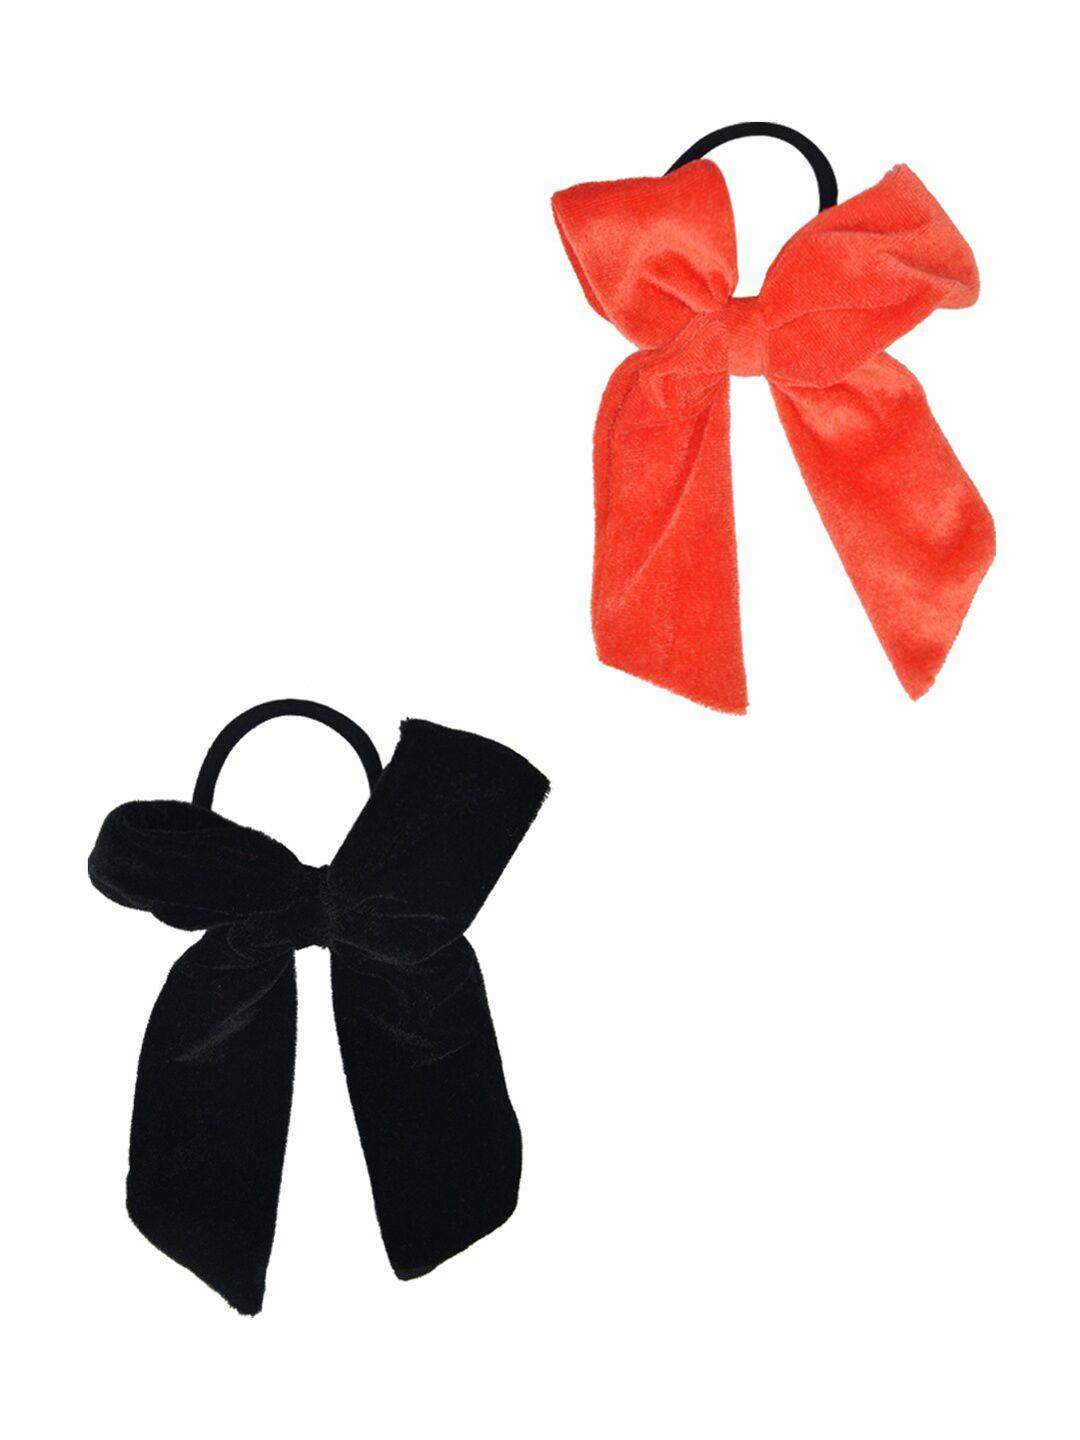 funkrafts girls red & black set of 2 ponytail holders